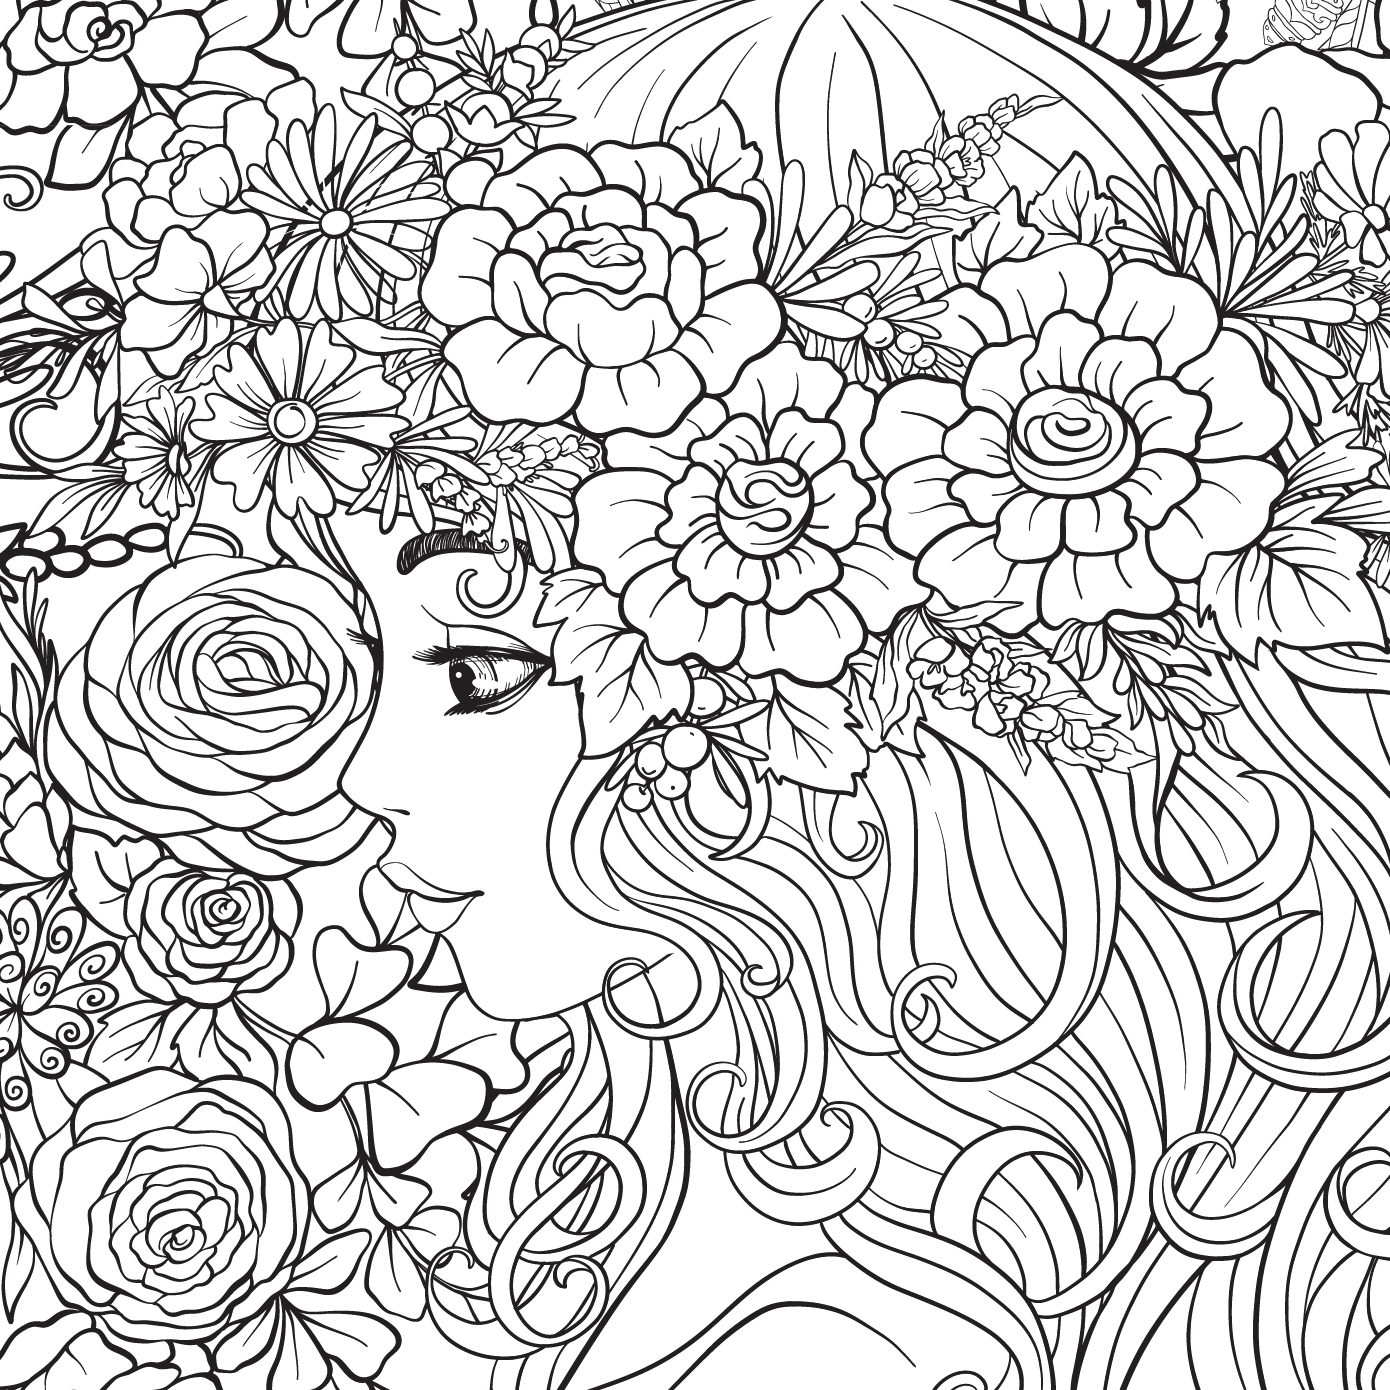 Flower Girl Coloring Page - Growing Up in Santa Cruz